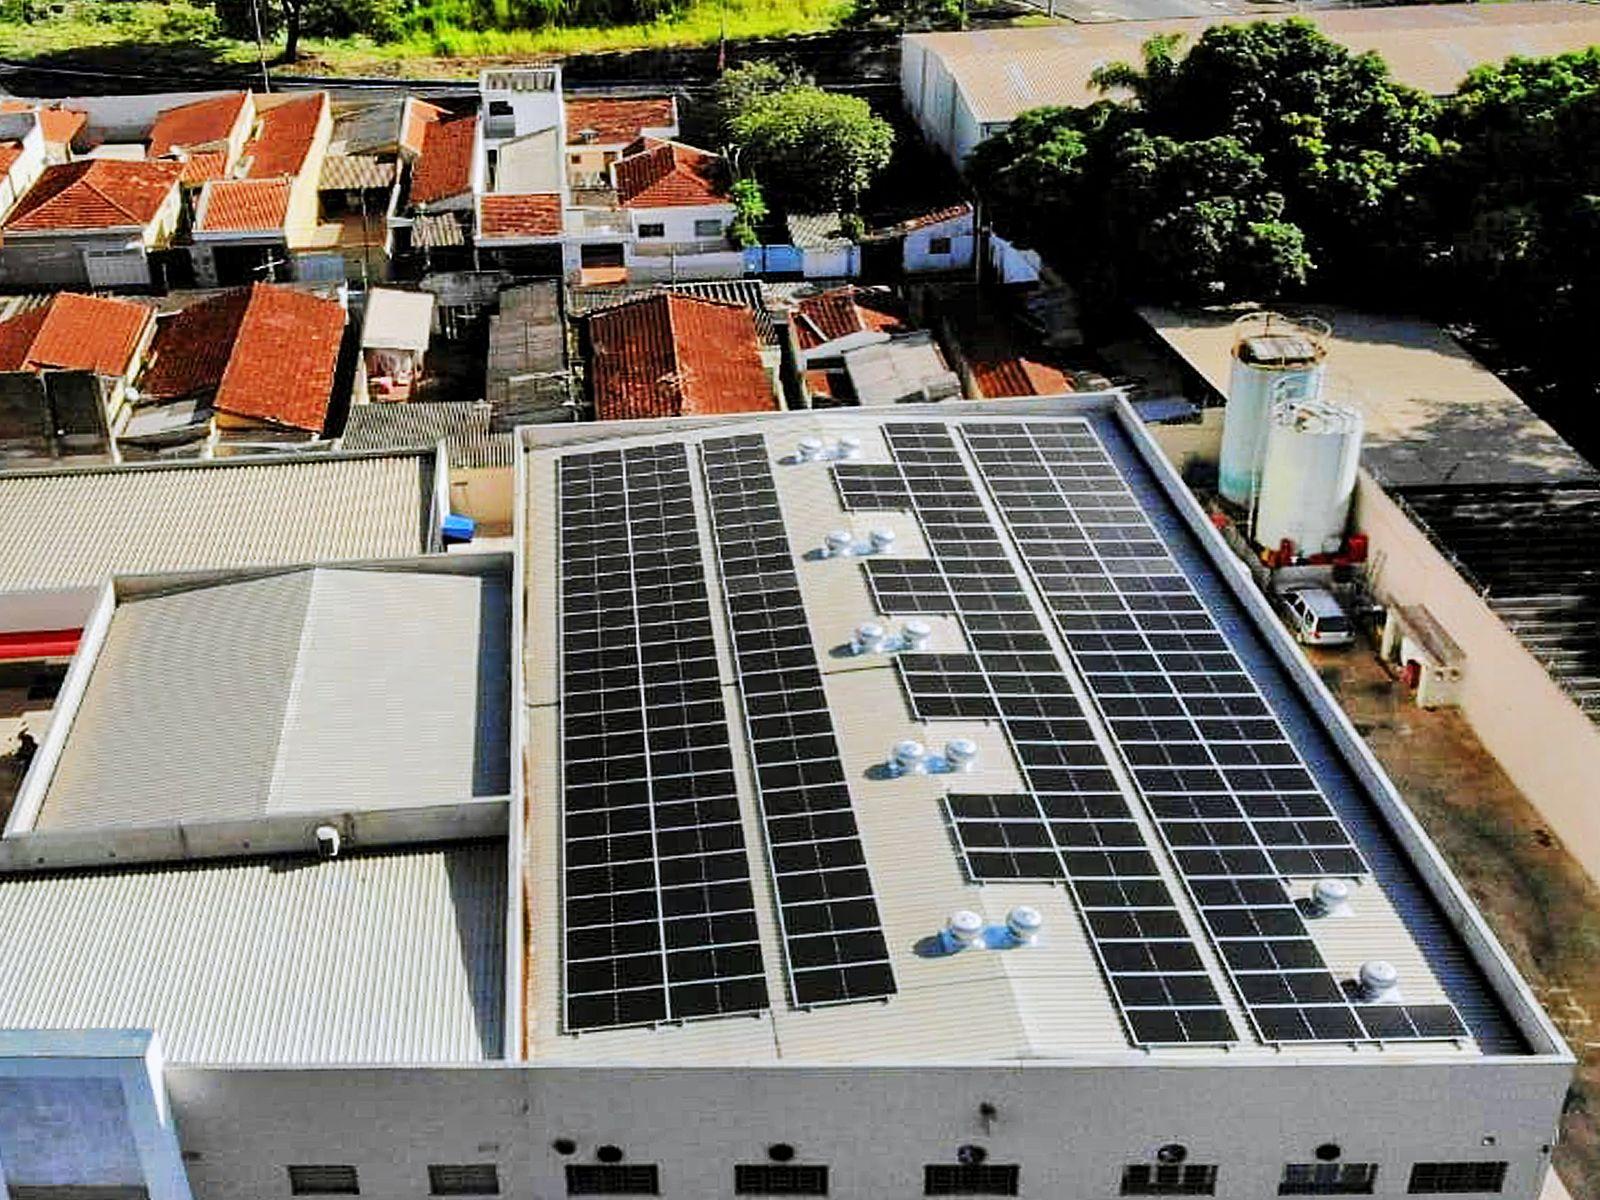 170 PV-panelen geïnstalleerd op het dak brengen de totale systeemgrootte op 90,1 kW in Ribeirão Preto-SP, Brazilië (2)